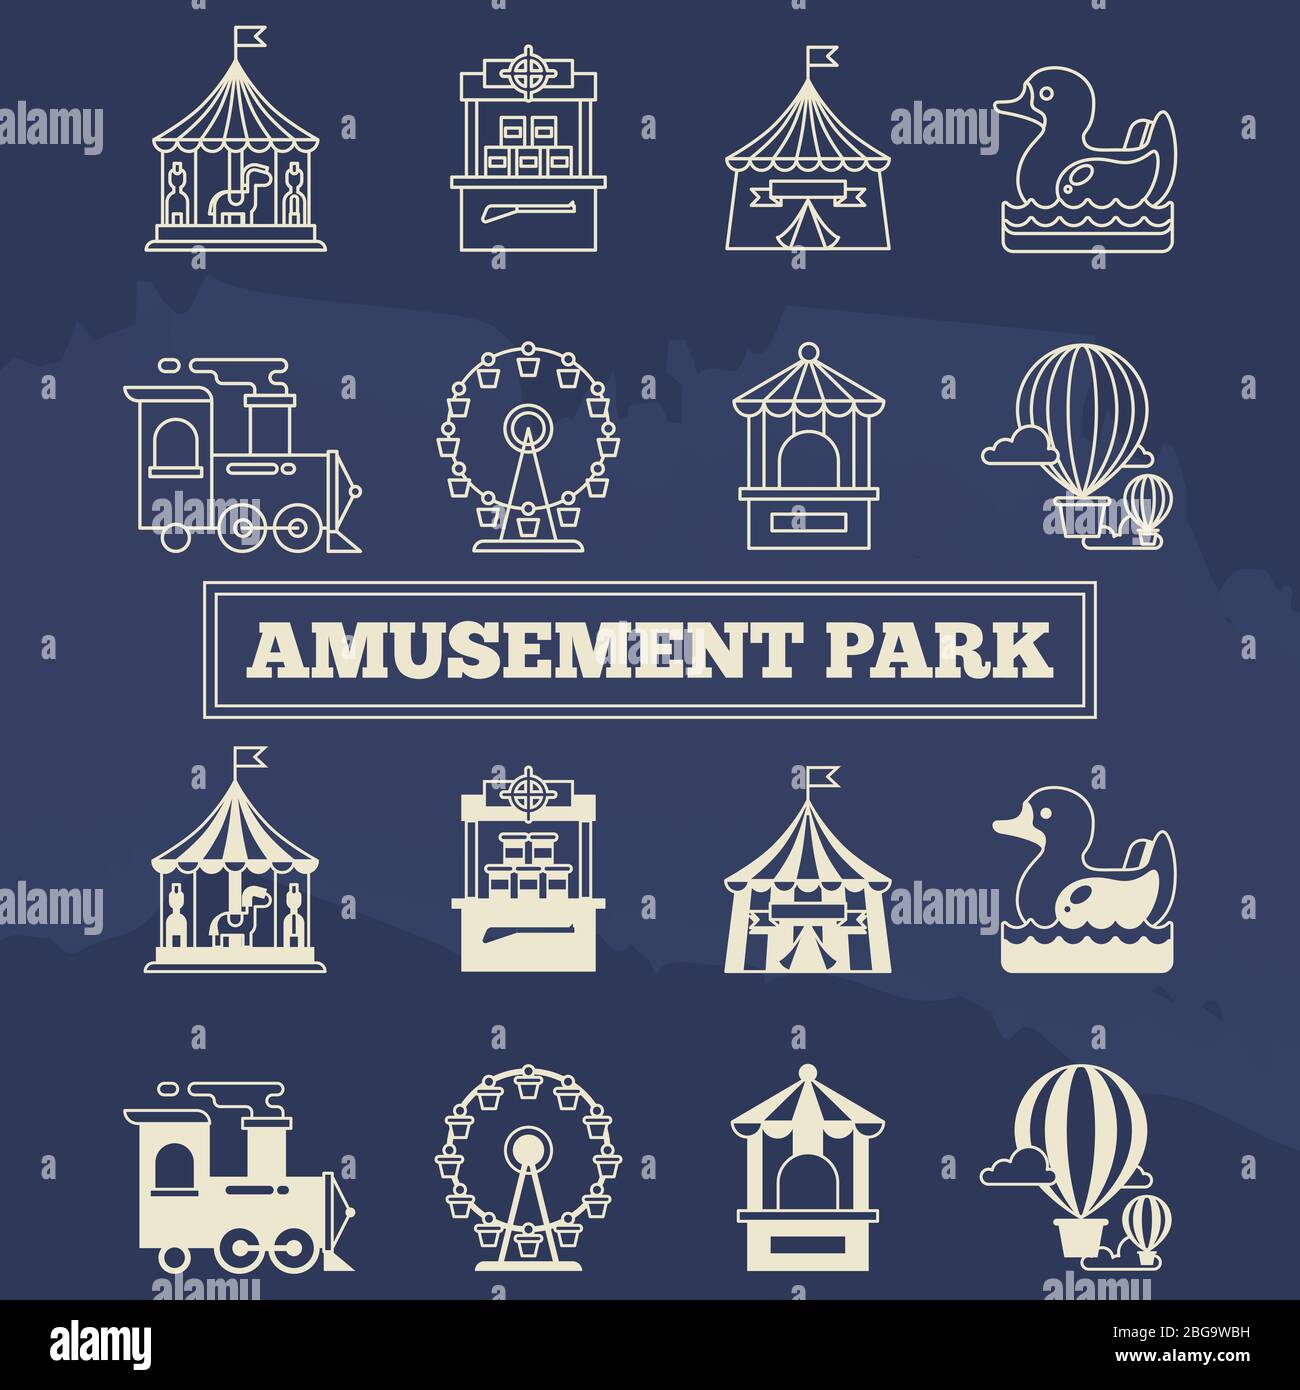 Luna Park linea sottile e icone di seta impostate. Cartello lineare per parco divertimenti. Illustrazione vettoriale Illustrazione Vettoriale